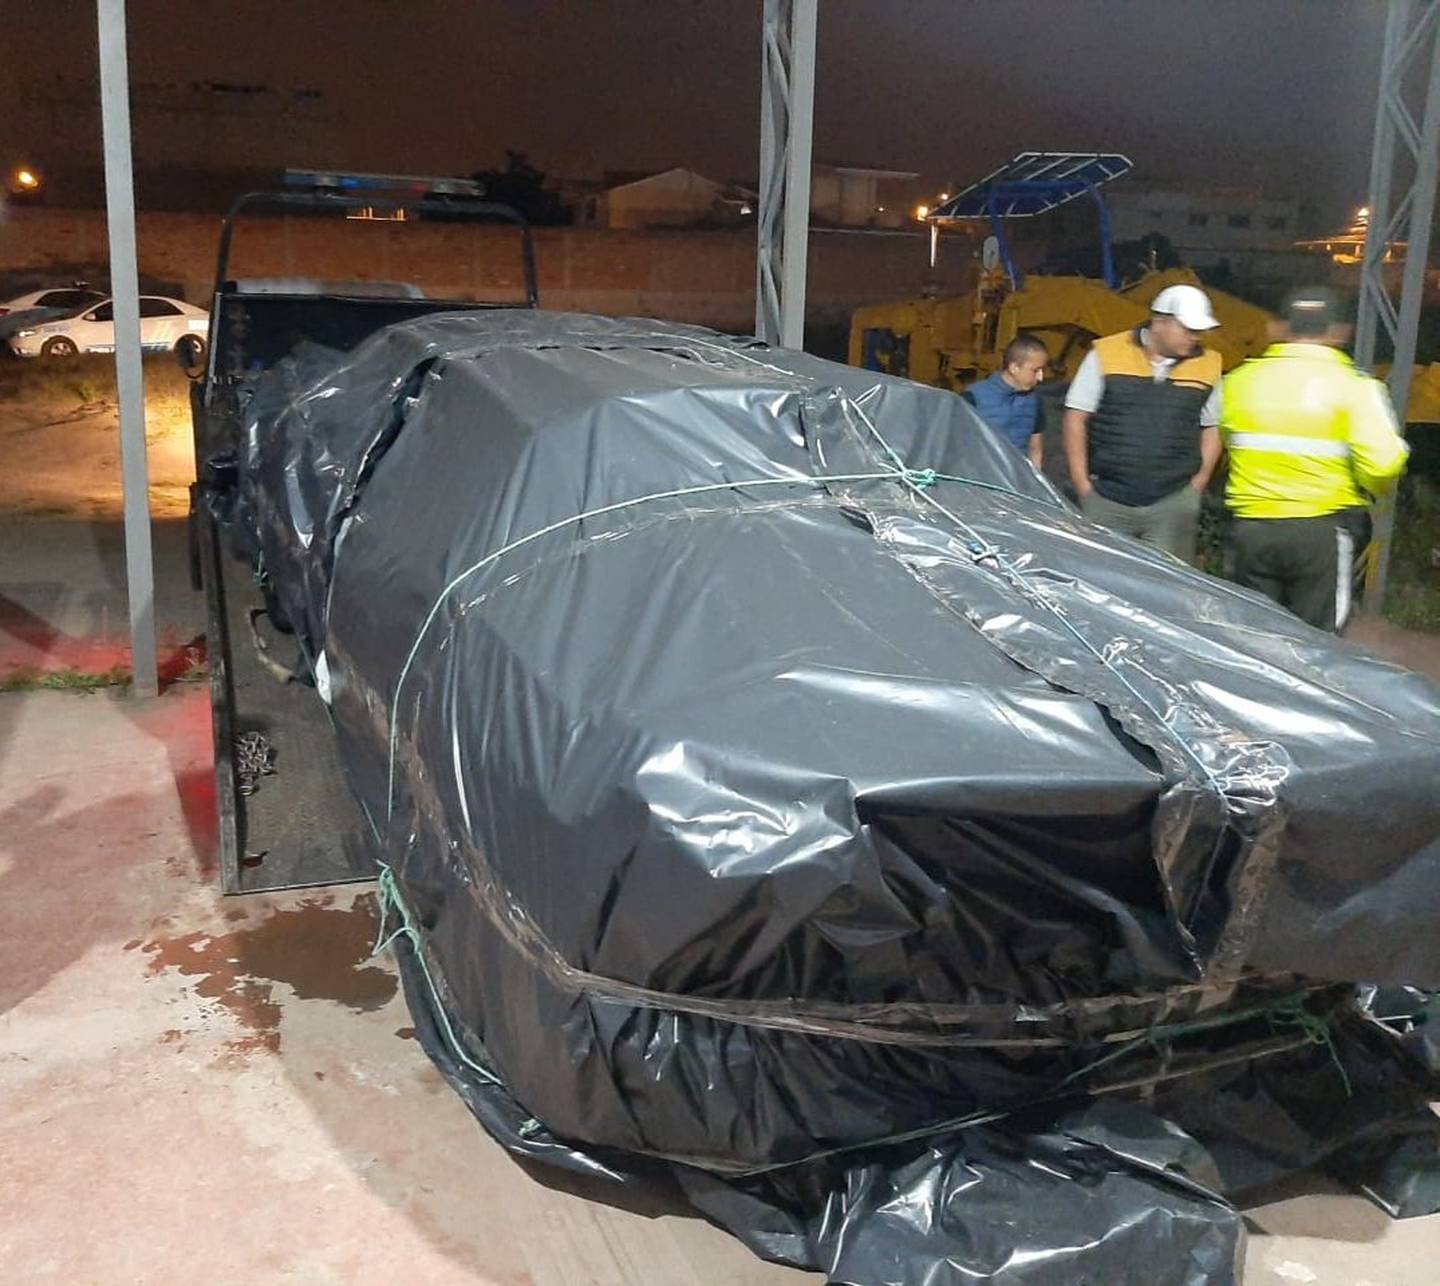 Encontraron el auto de alta gama que arrolló a una persona en el norte de Quito causando su muerte